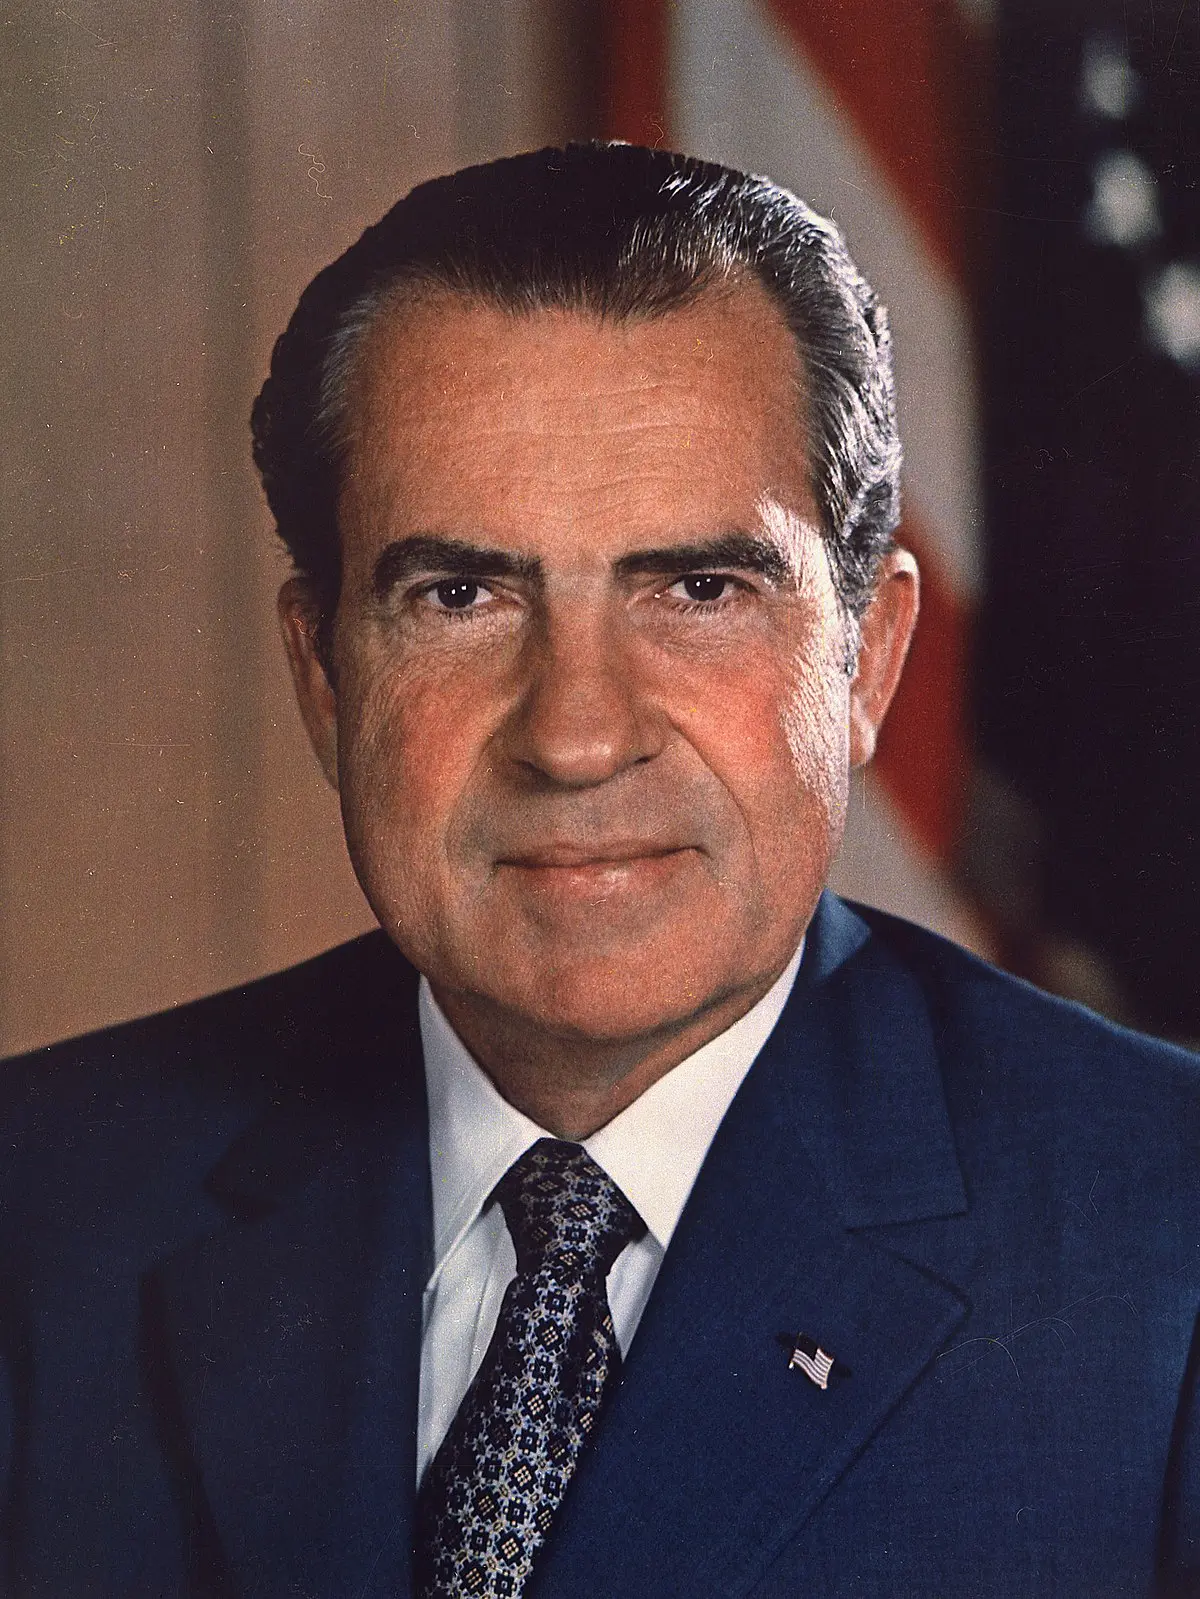 el escandalo de watergate resumen - Qué fue lo que hizo Richard Nixon